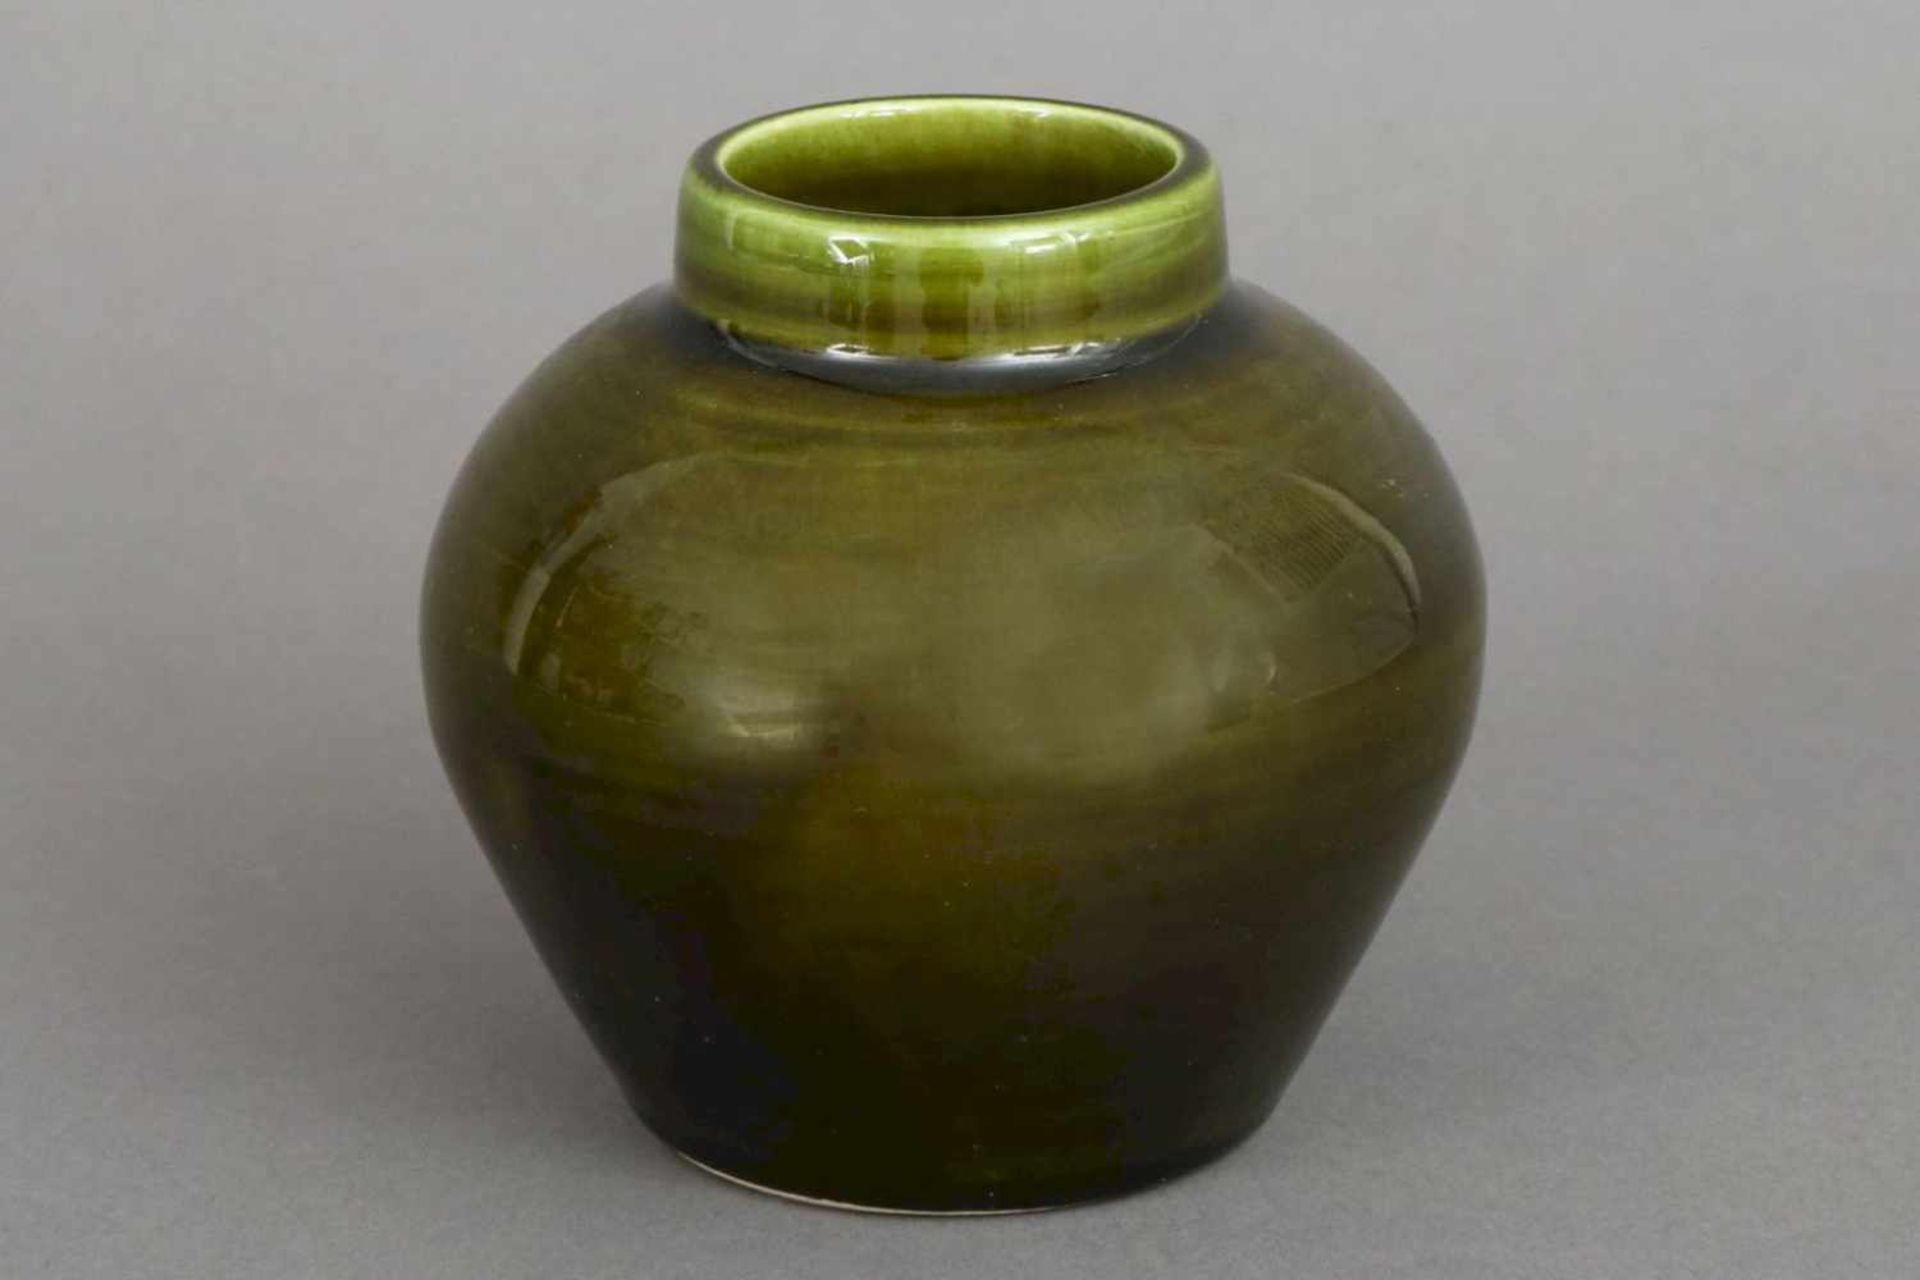 Chinesisches VasengefäßPorzellan, bauchiges Gefäß mit kurzem Hals, grüne Glasur, am Boden